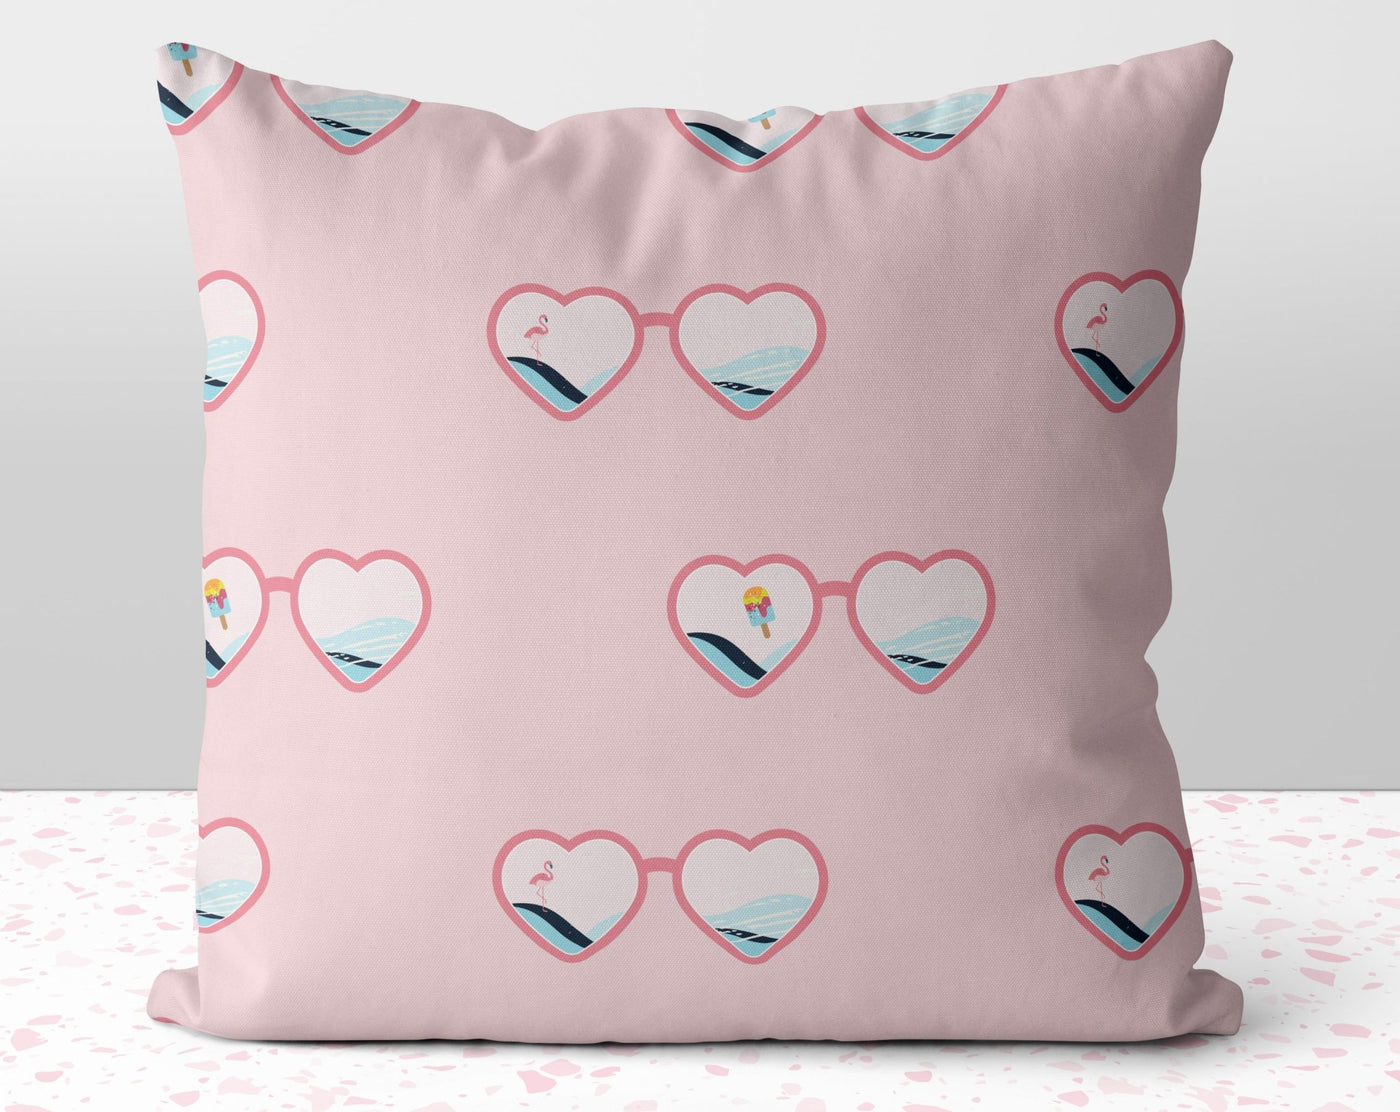 Heart Sunglasses Summer Fun Pink Pillow Throw Cover with Insert - Cush Potato Pillows